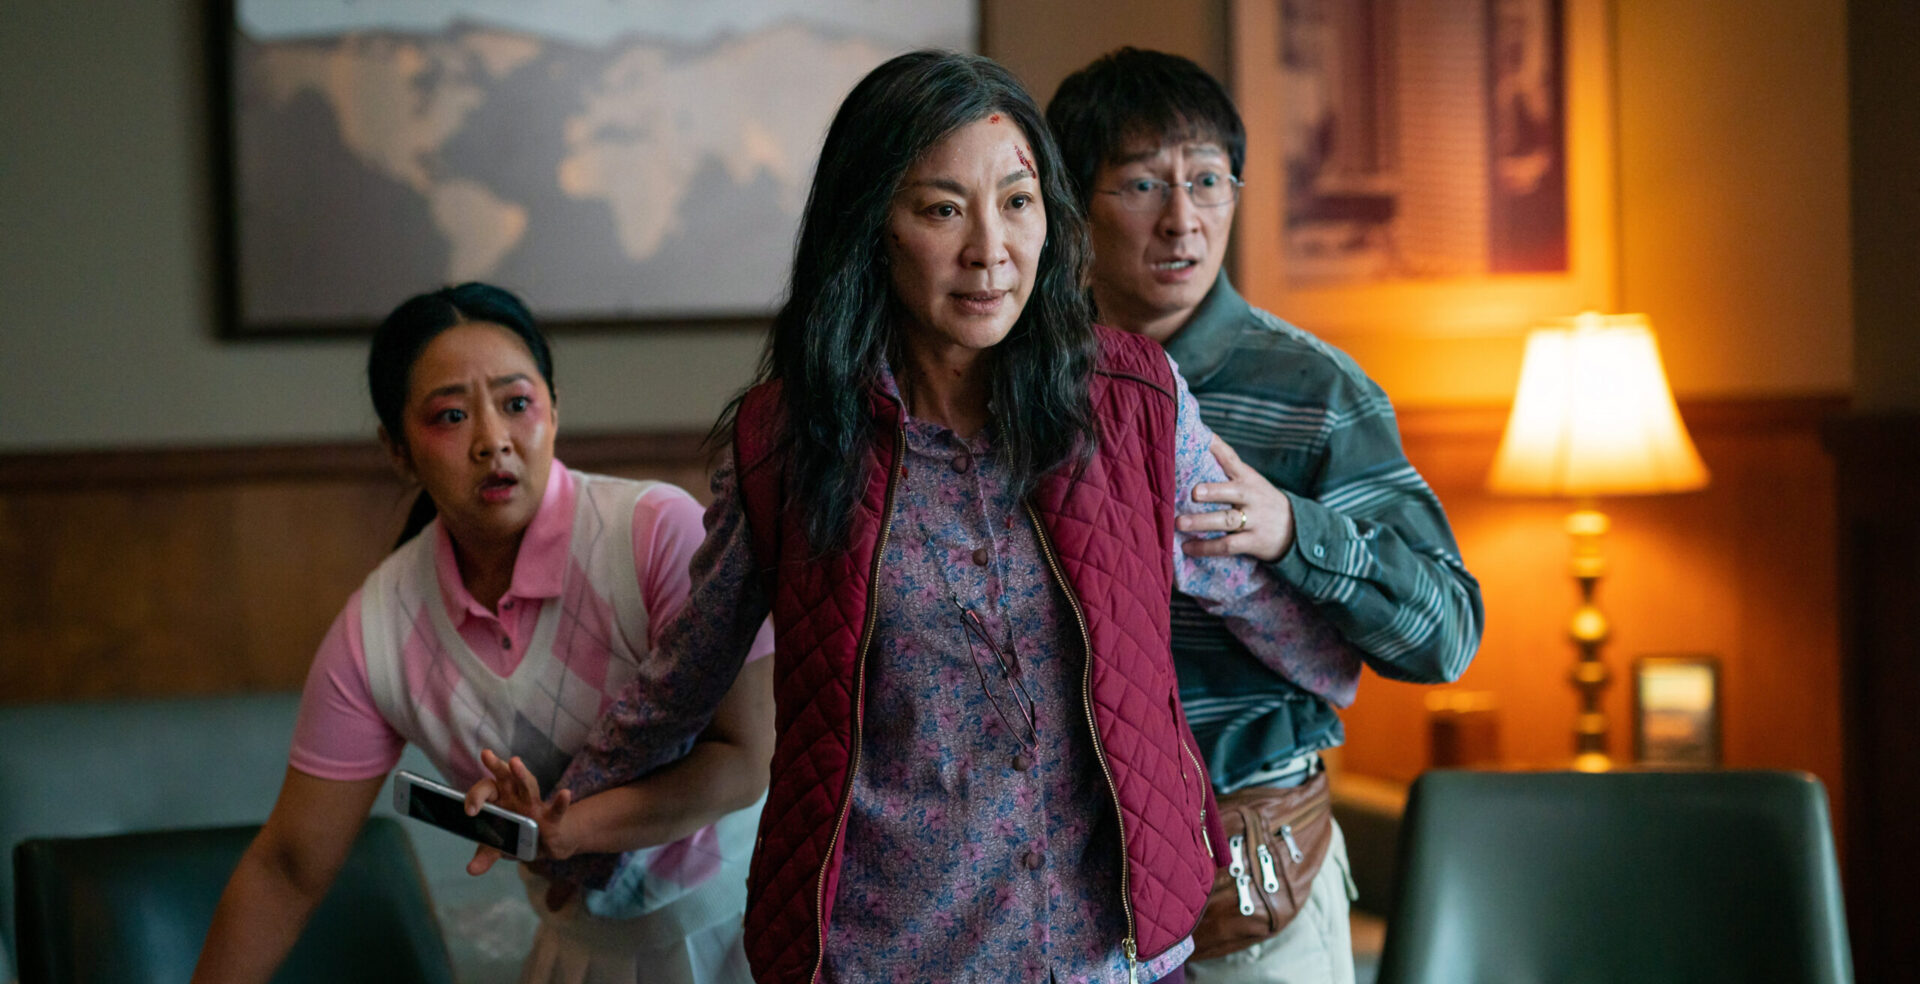 Waschsalonbesitzerin Evelyn (Michelle Yeoh) beschützt ihre Familie.